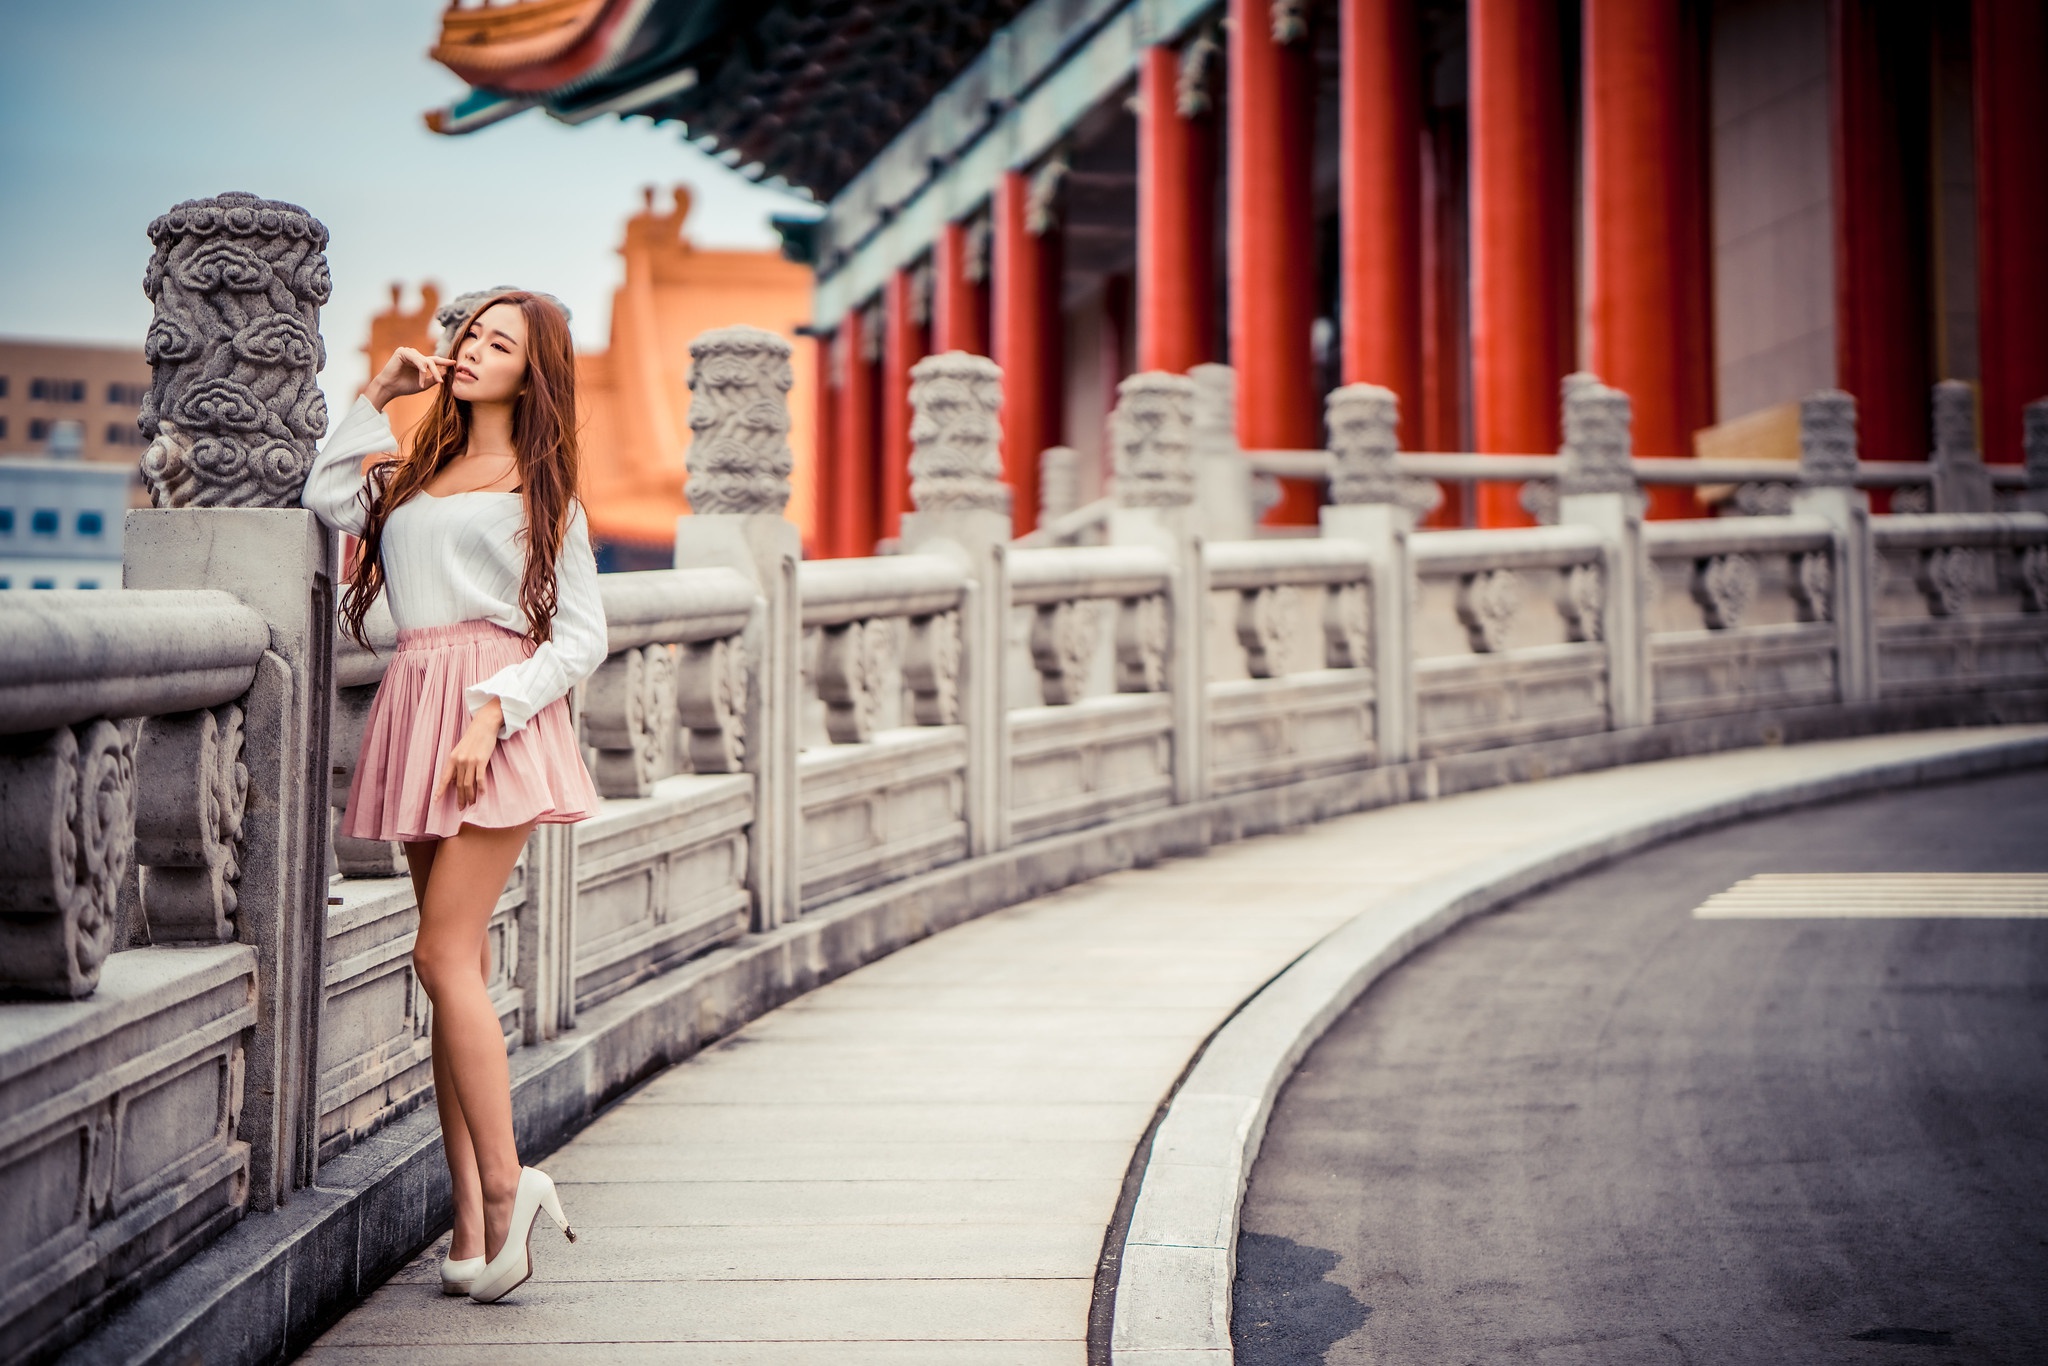 Asian Model Women Long Hair Brunette Skirt Blouse White High Heels Railing Leaning Old Building 2048x1366